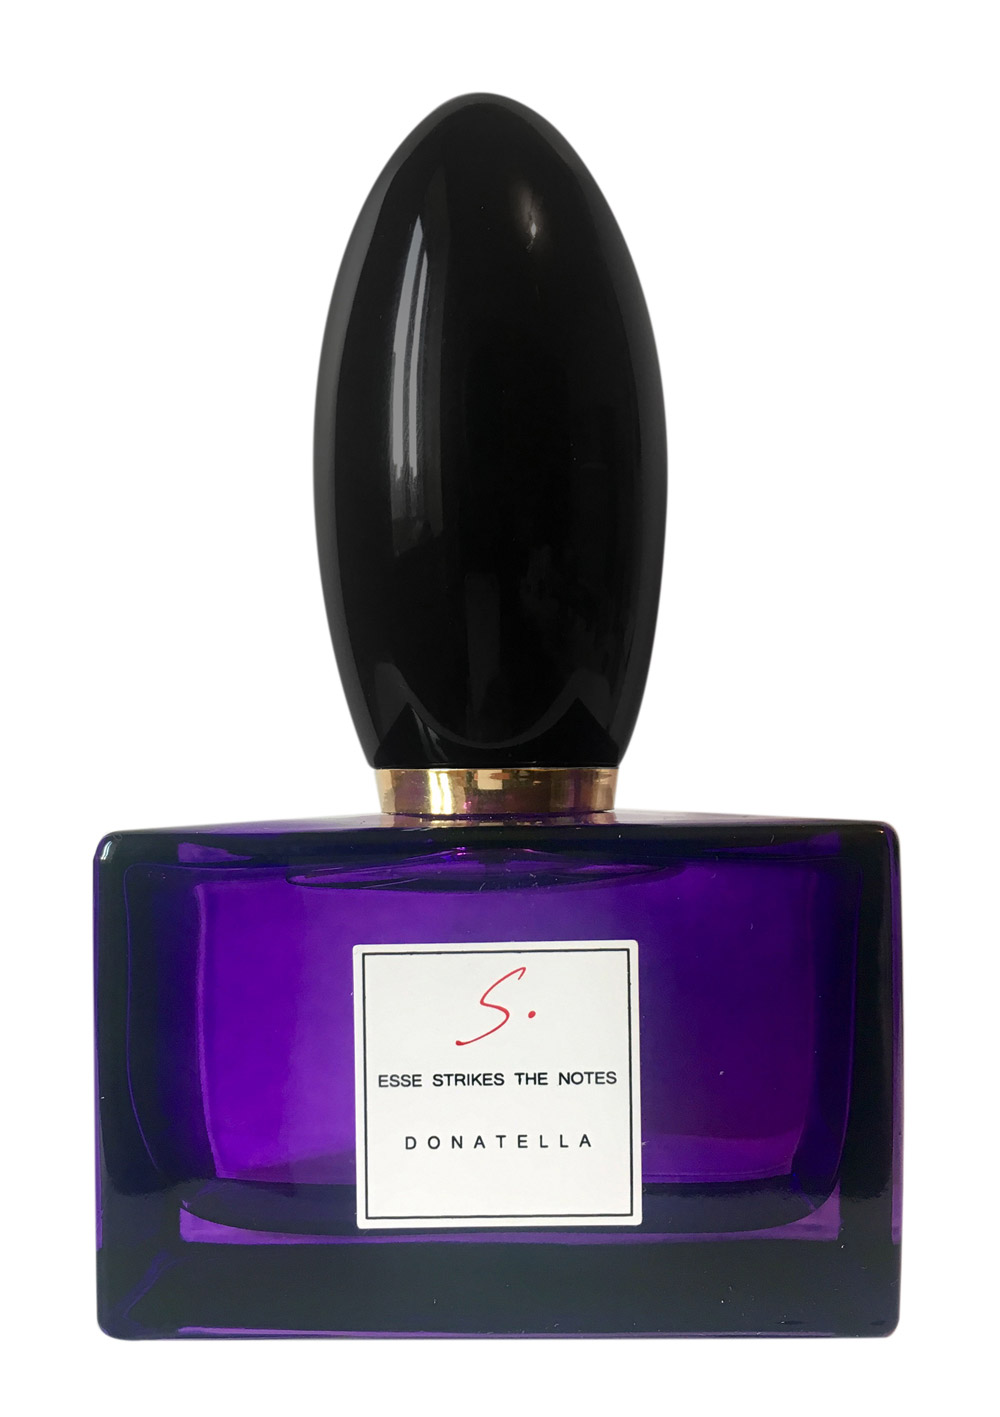 Donatella Esse Strikes The Notes parfum 